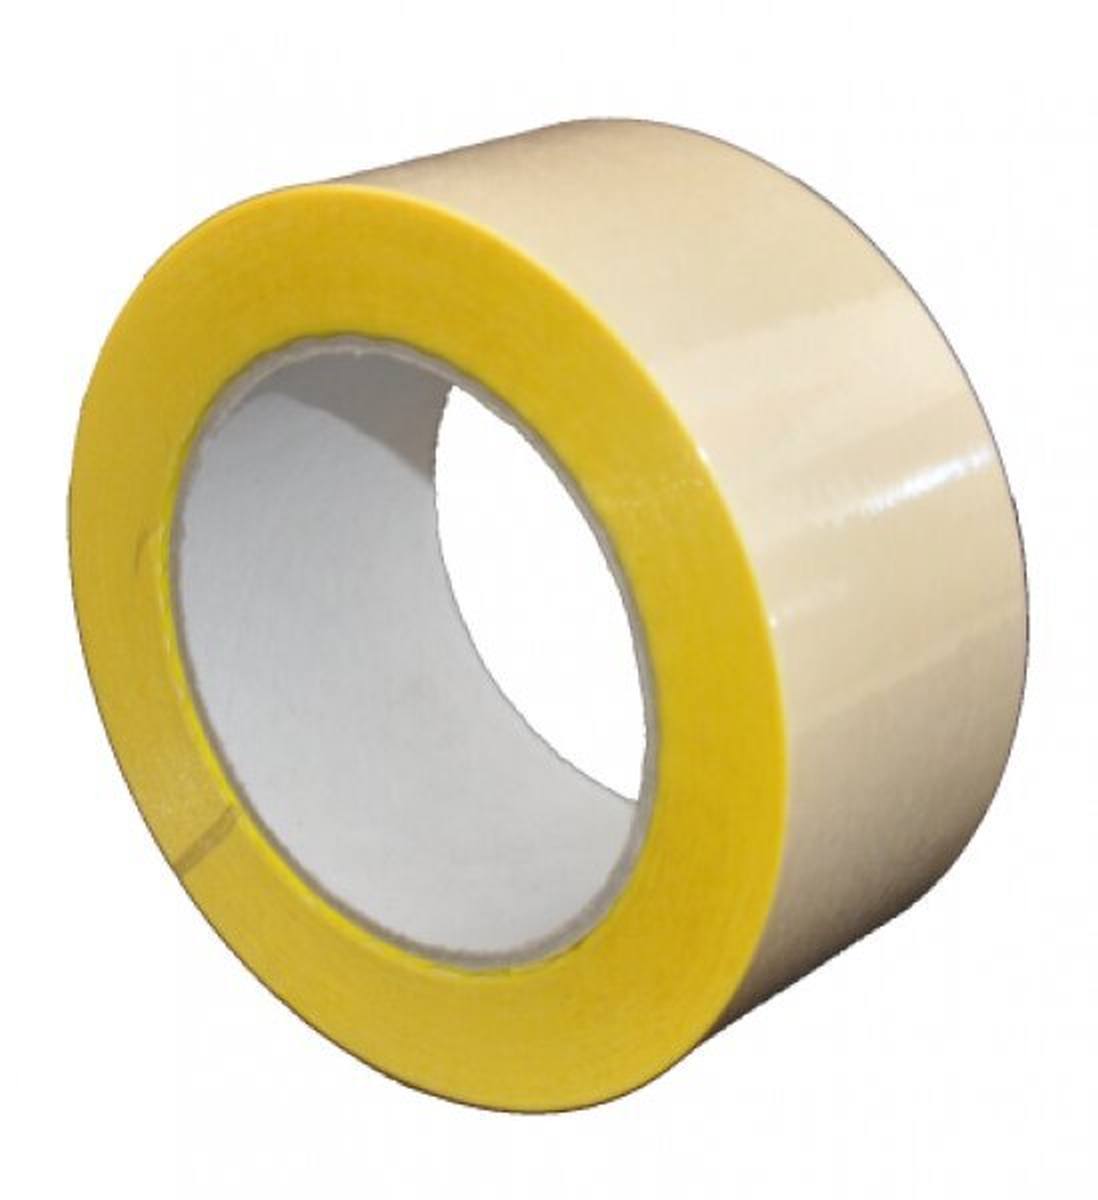 S-K-S 407 Cinta adhesiva de doble cara con soporte de polipropileno, alta / baja adhesividad, amarilla, 125 mm x 50 m, 0,15 mm